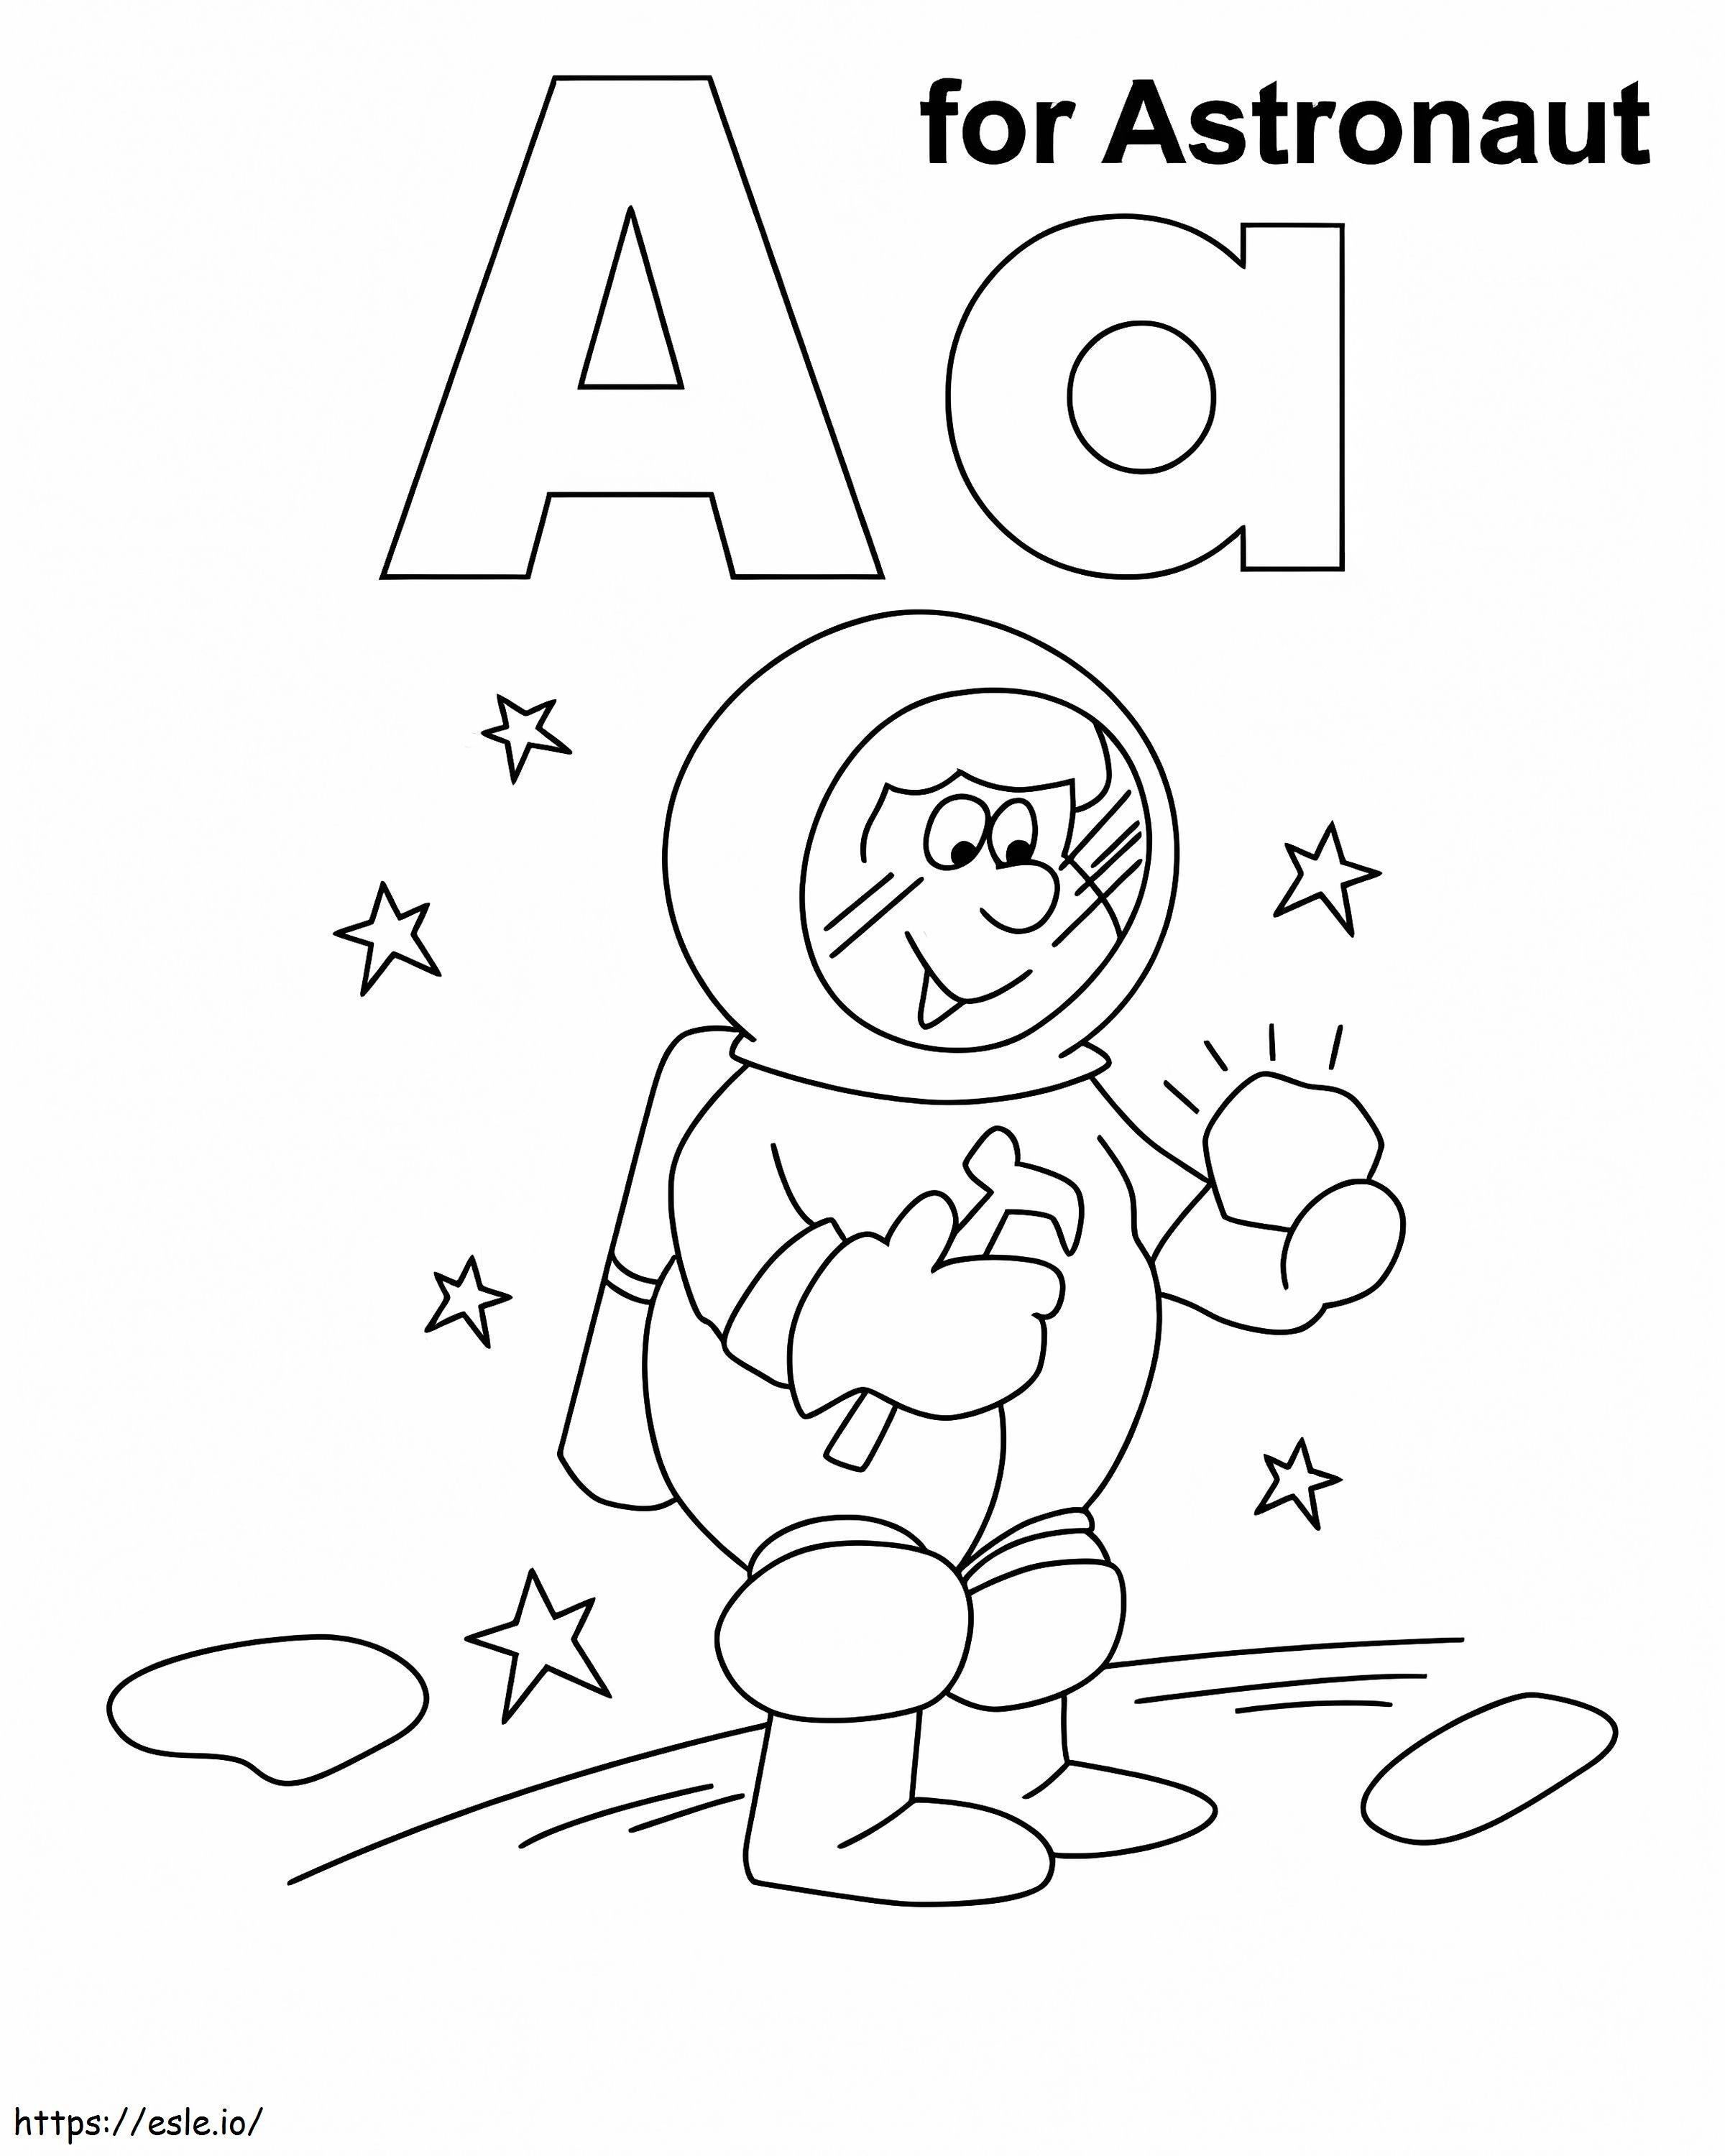 Litera A Dla Astronauty kolorowanka